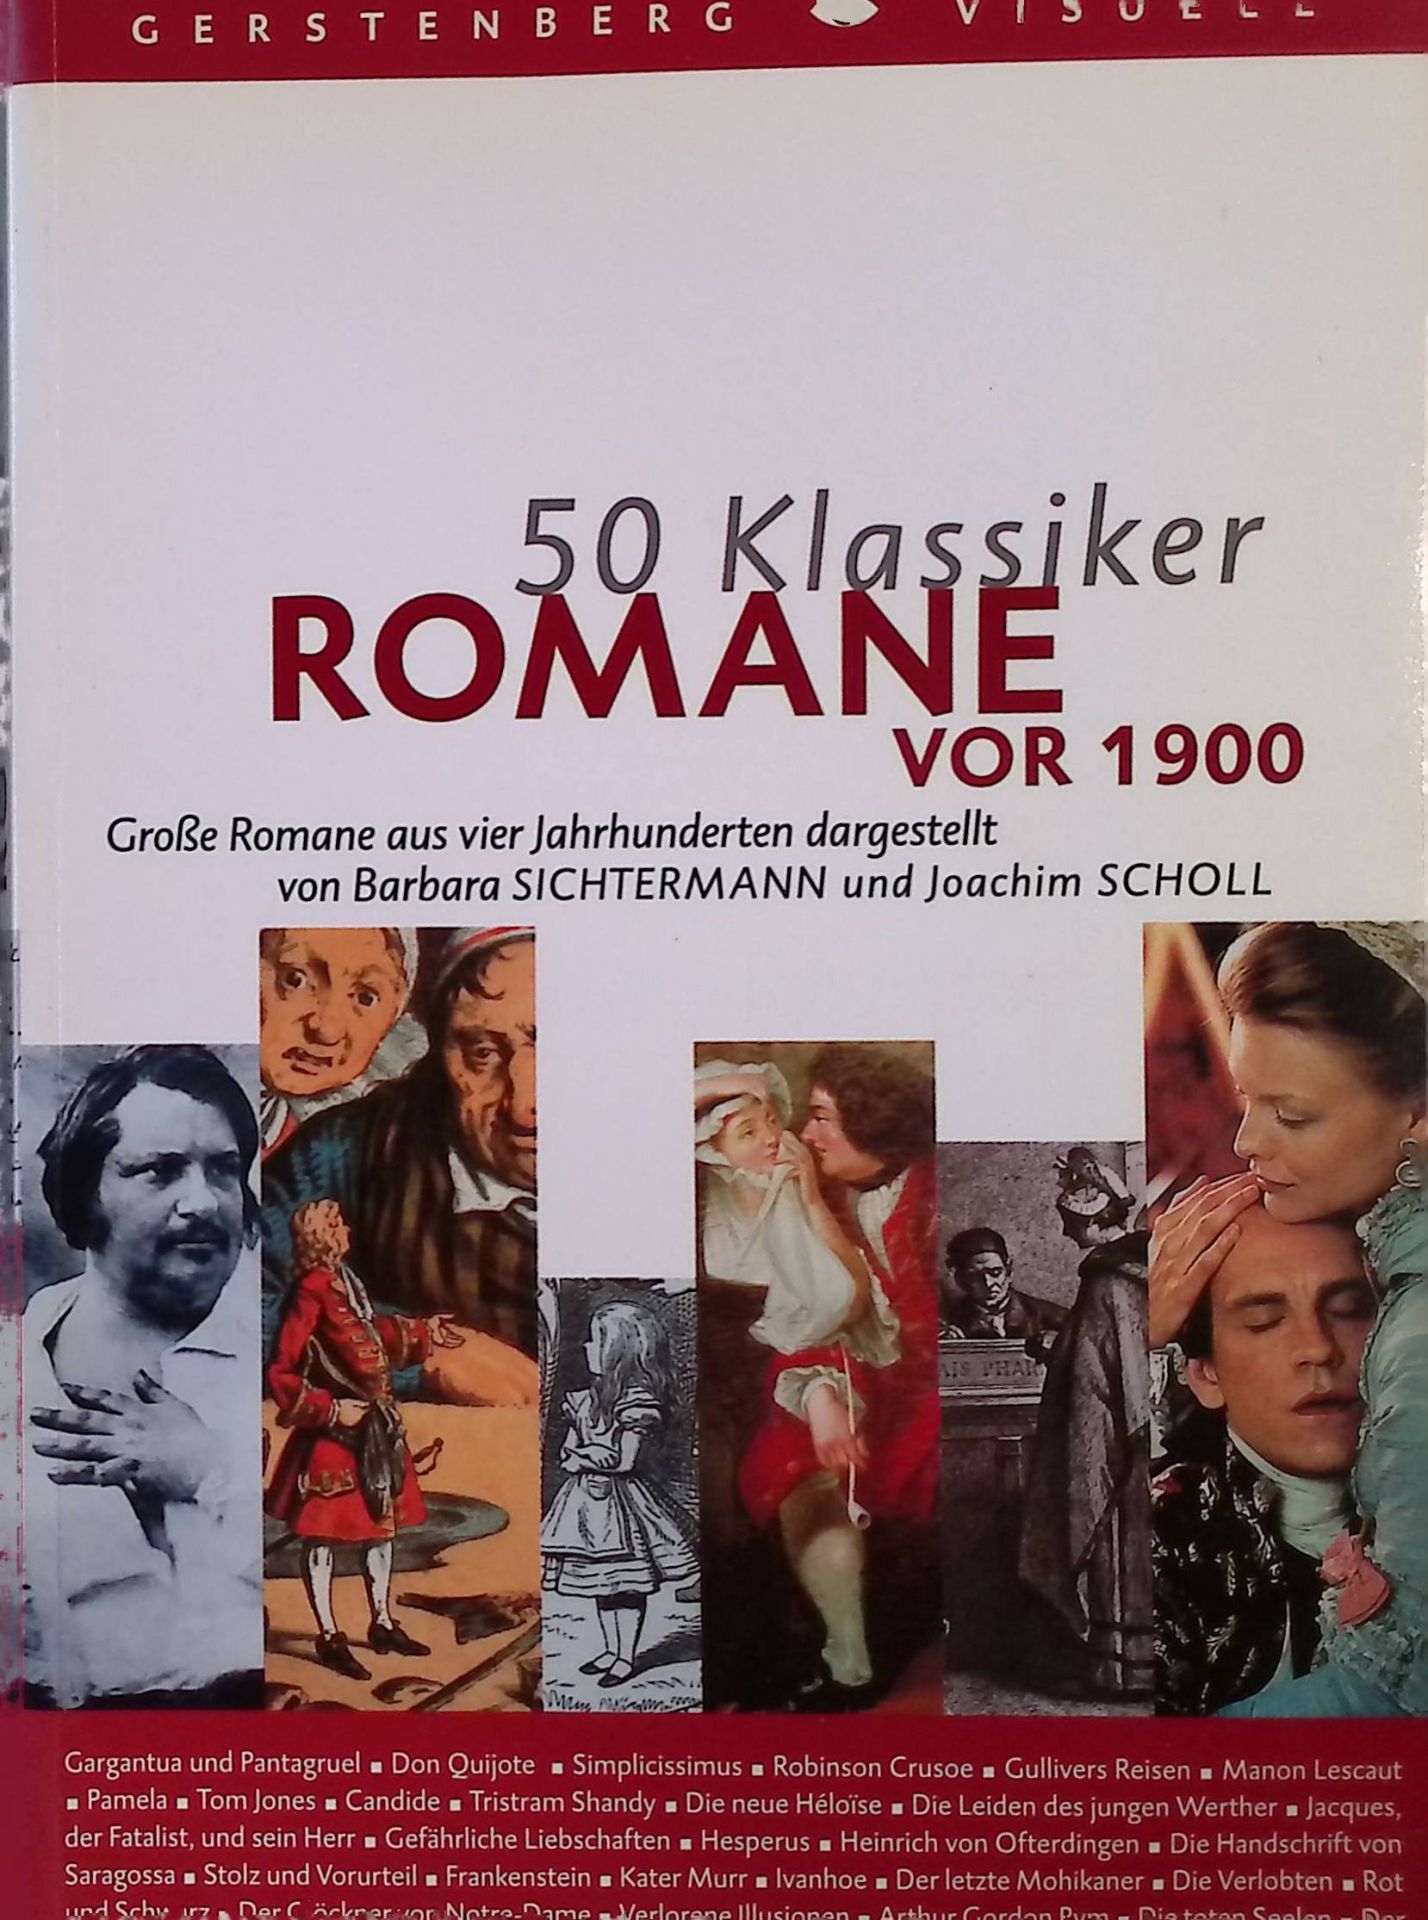 50 Klassiker. Romane vor 1900 : große Romane aus vier Jahrhunderten. - Sichtermann, Barbara und Joachim Scholl